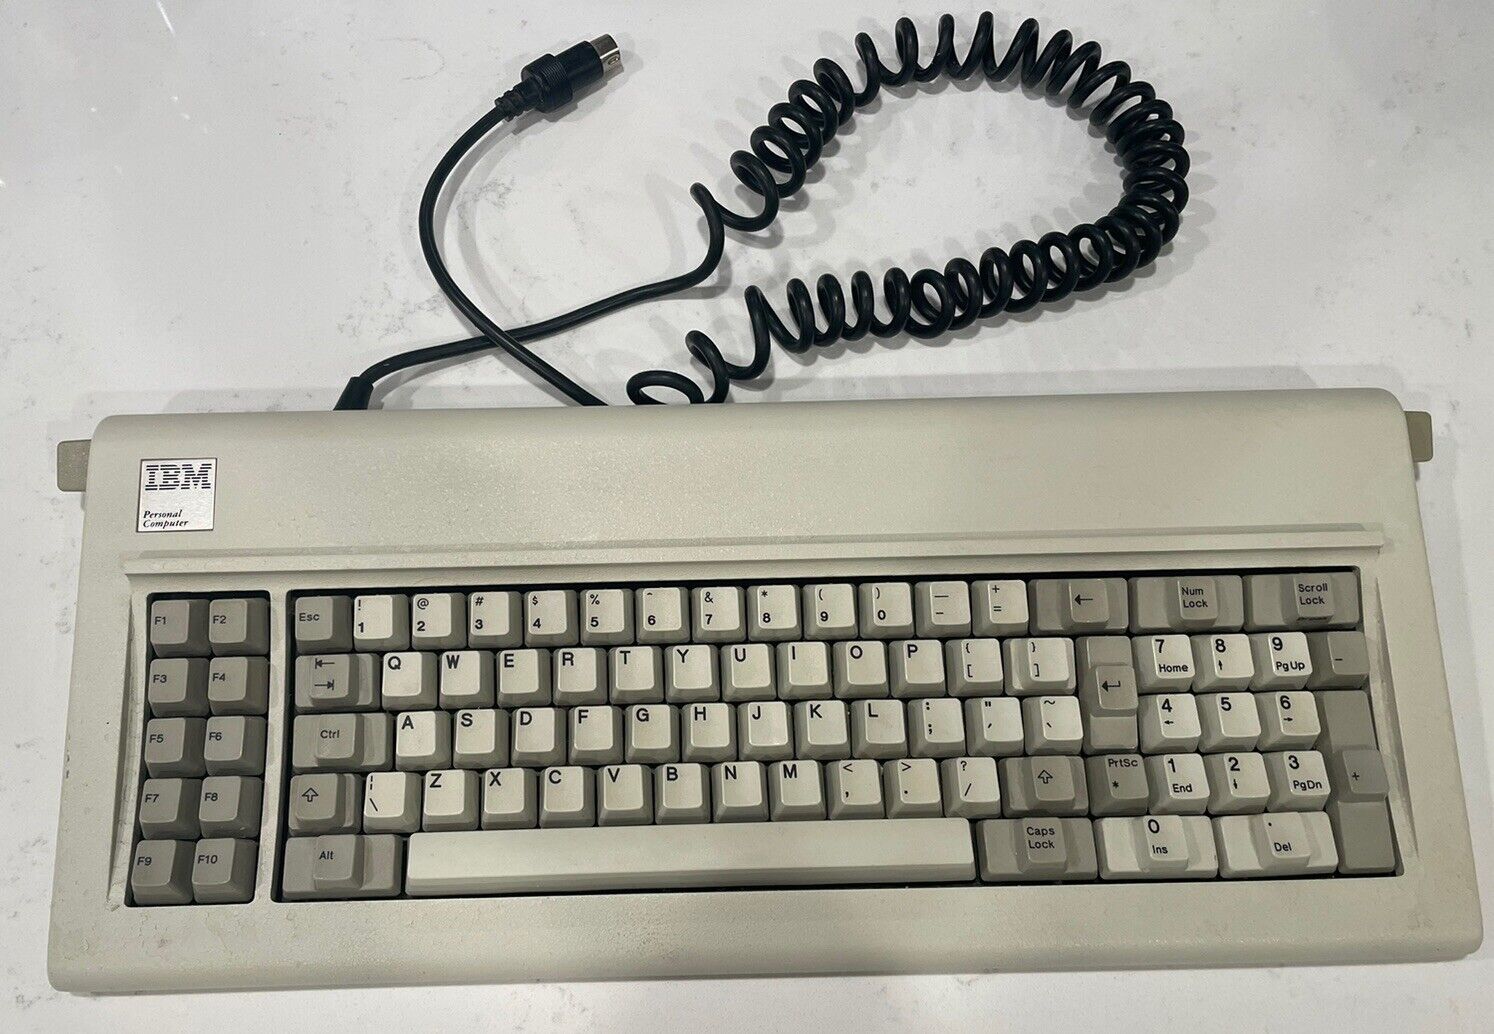 Vintage IBM personal computer keyboard